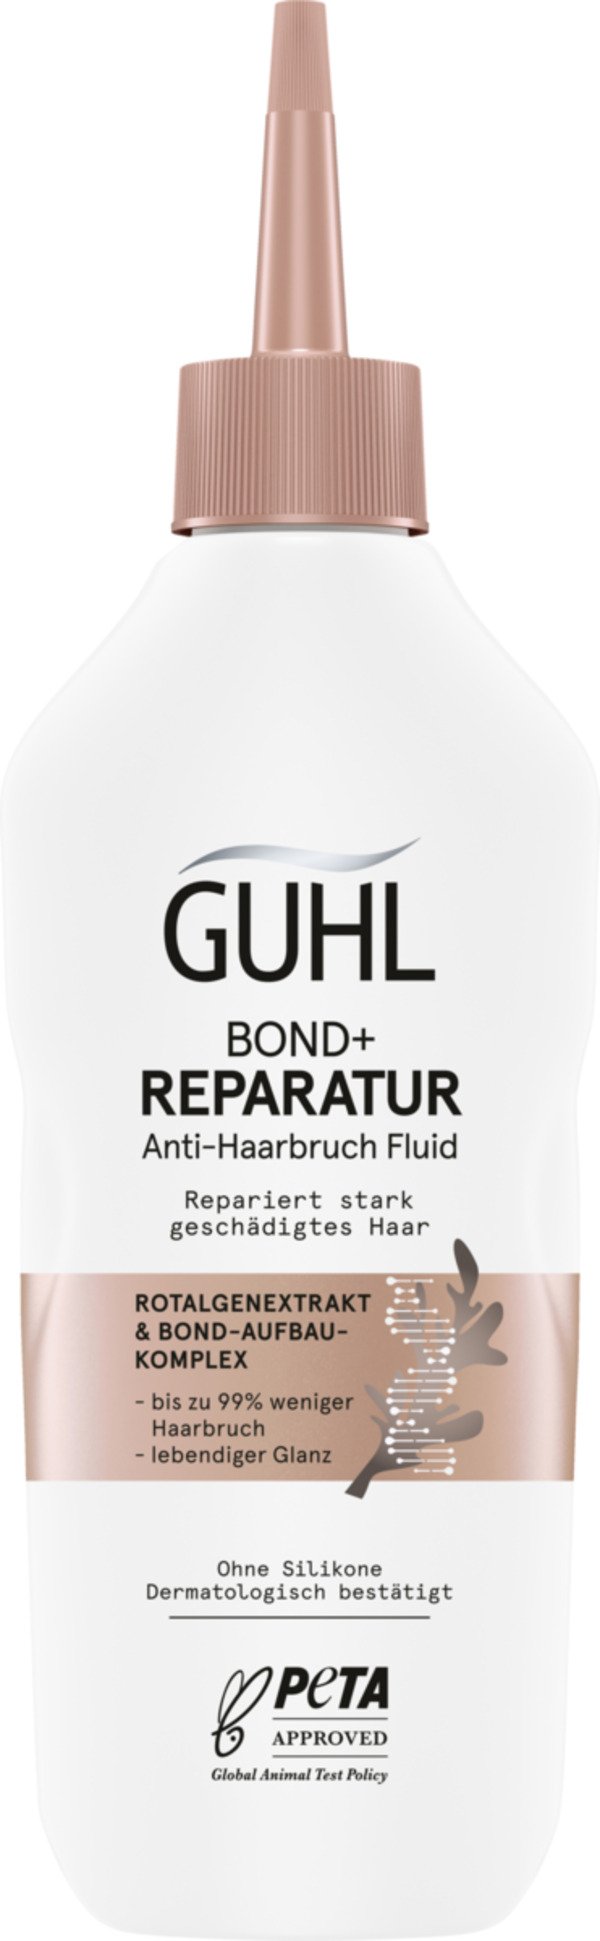 Bild 1 von Guhl BOND+ Reparatur Anti-Haarbruch Fluid